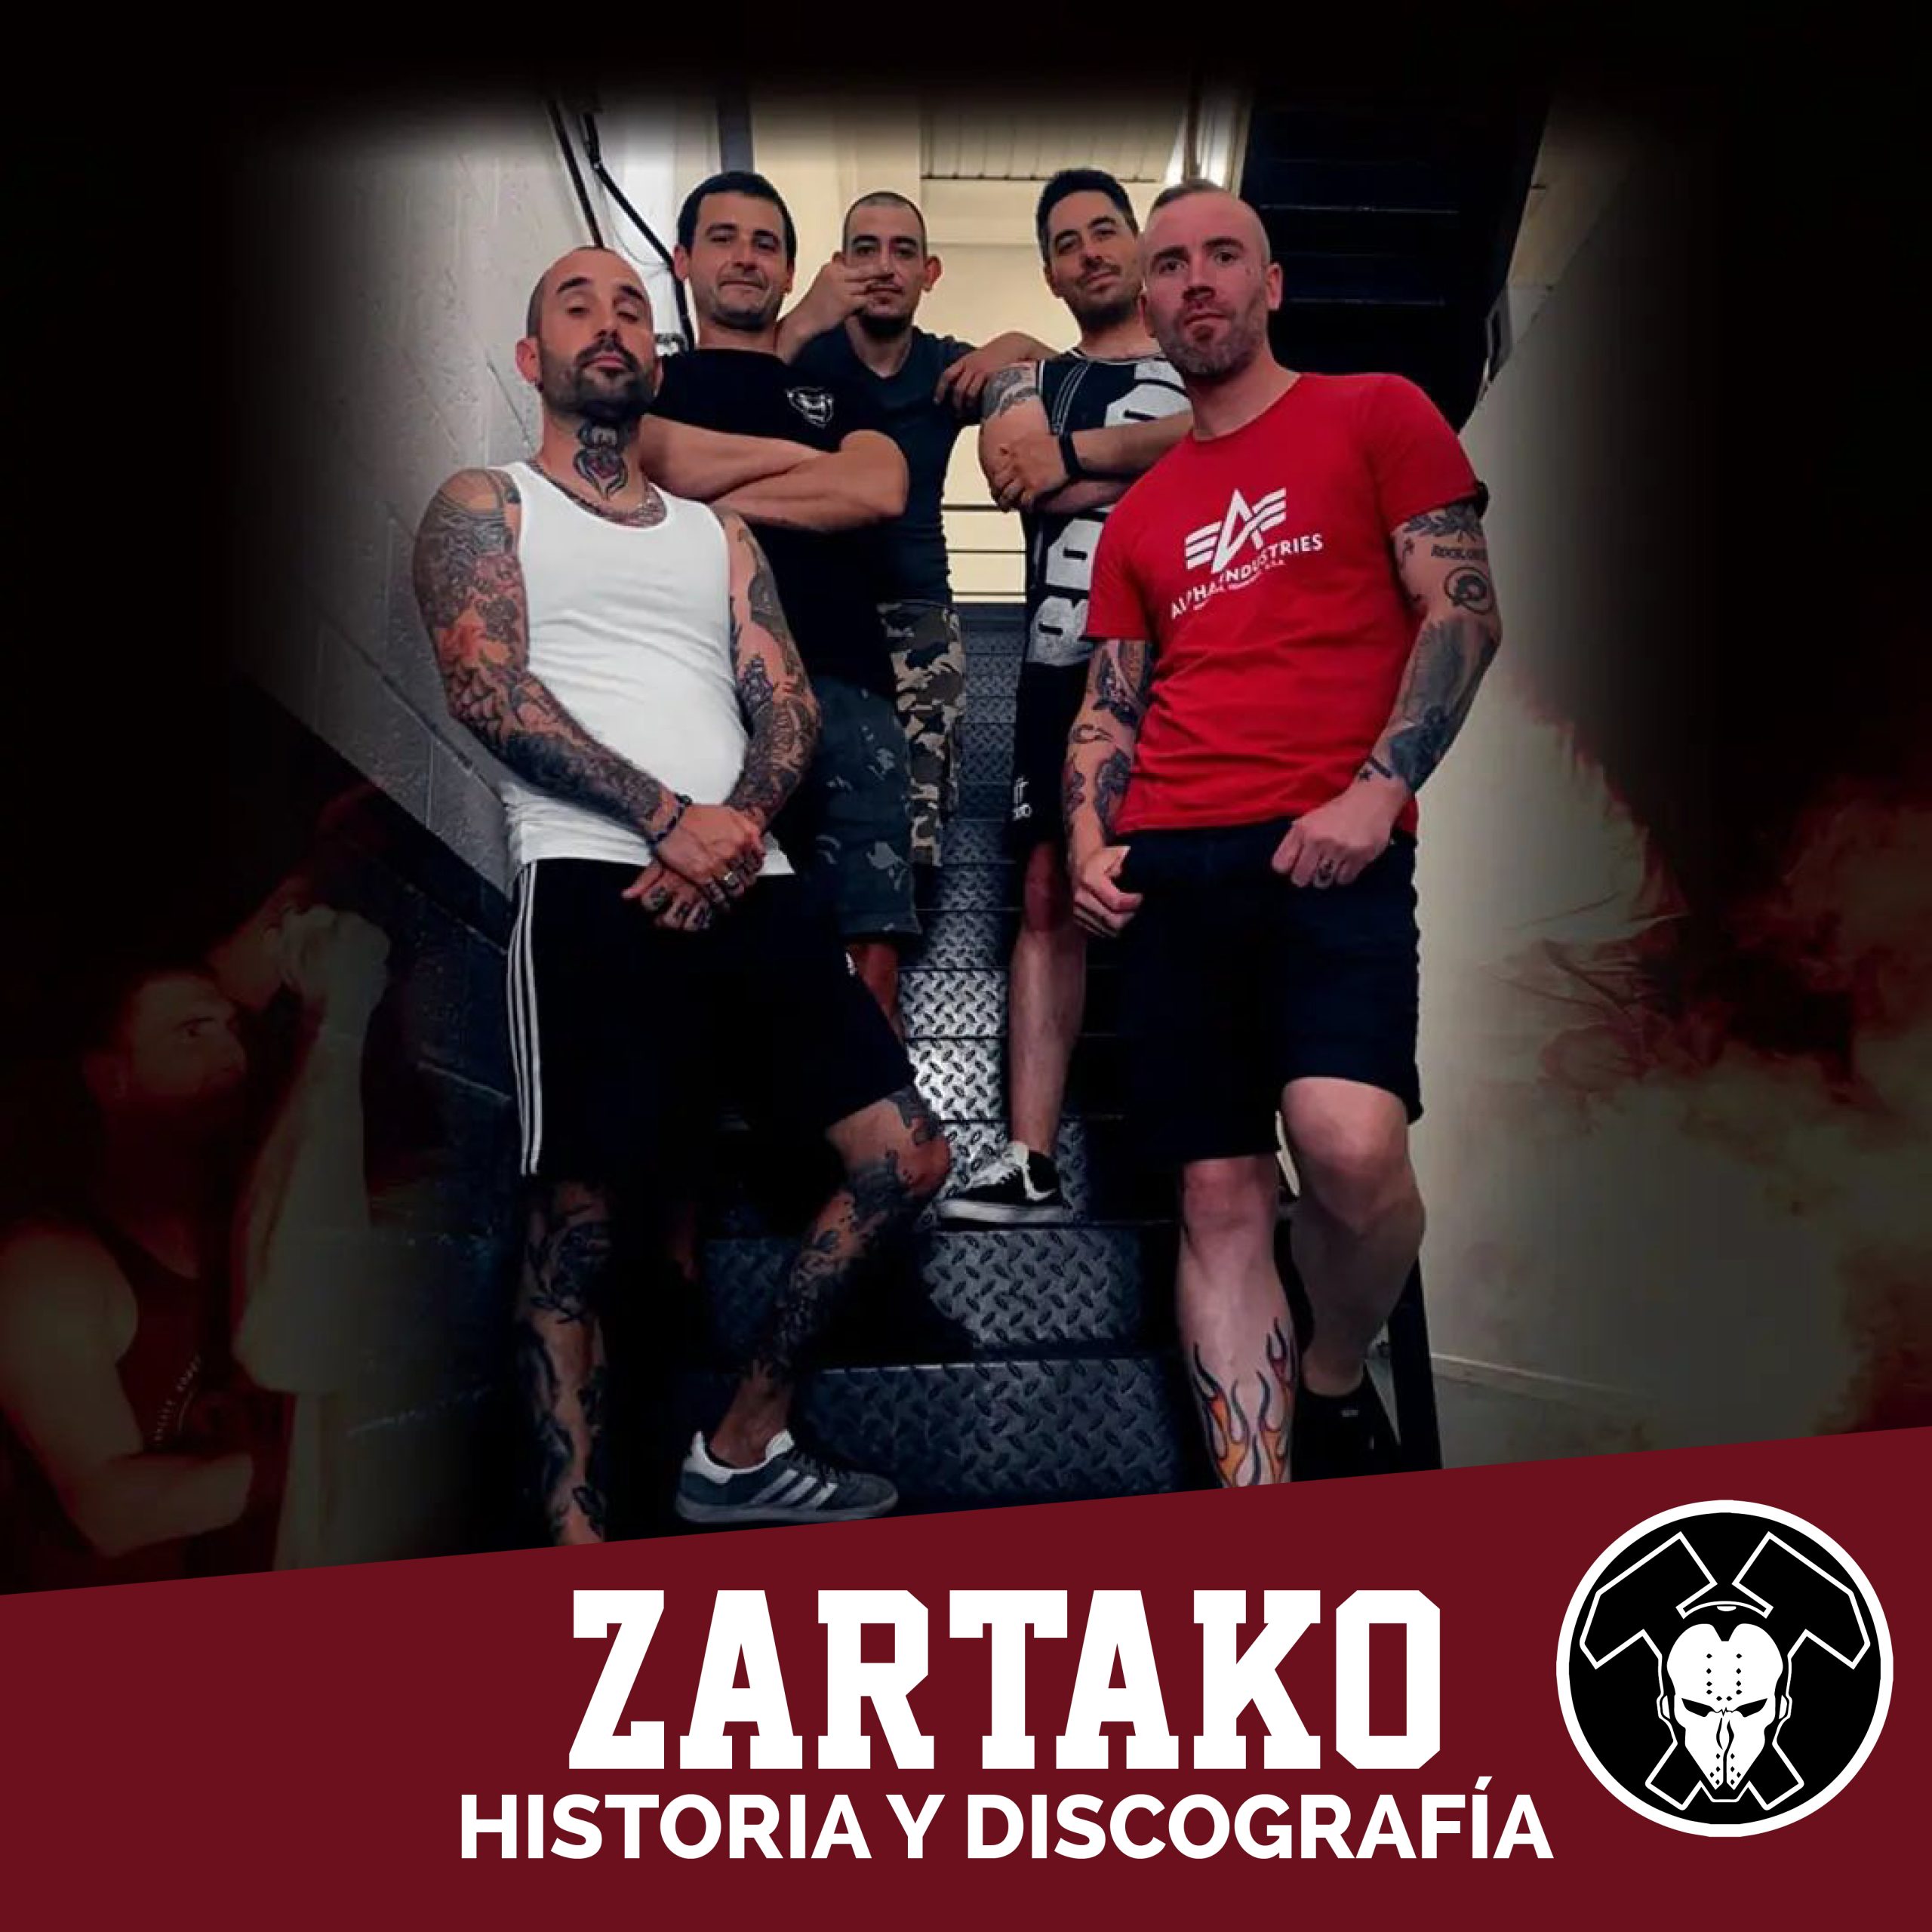 Miembros del grupo Zaratako